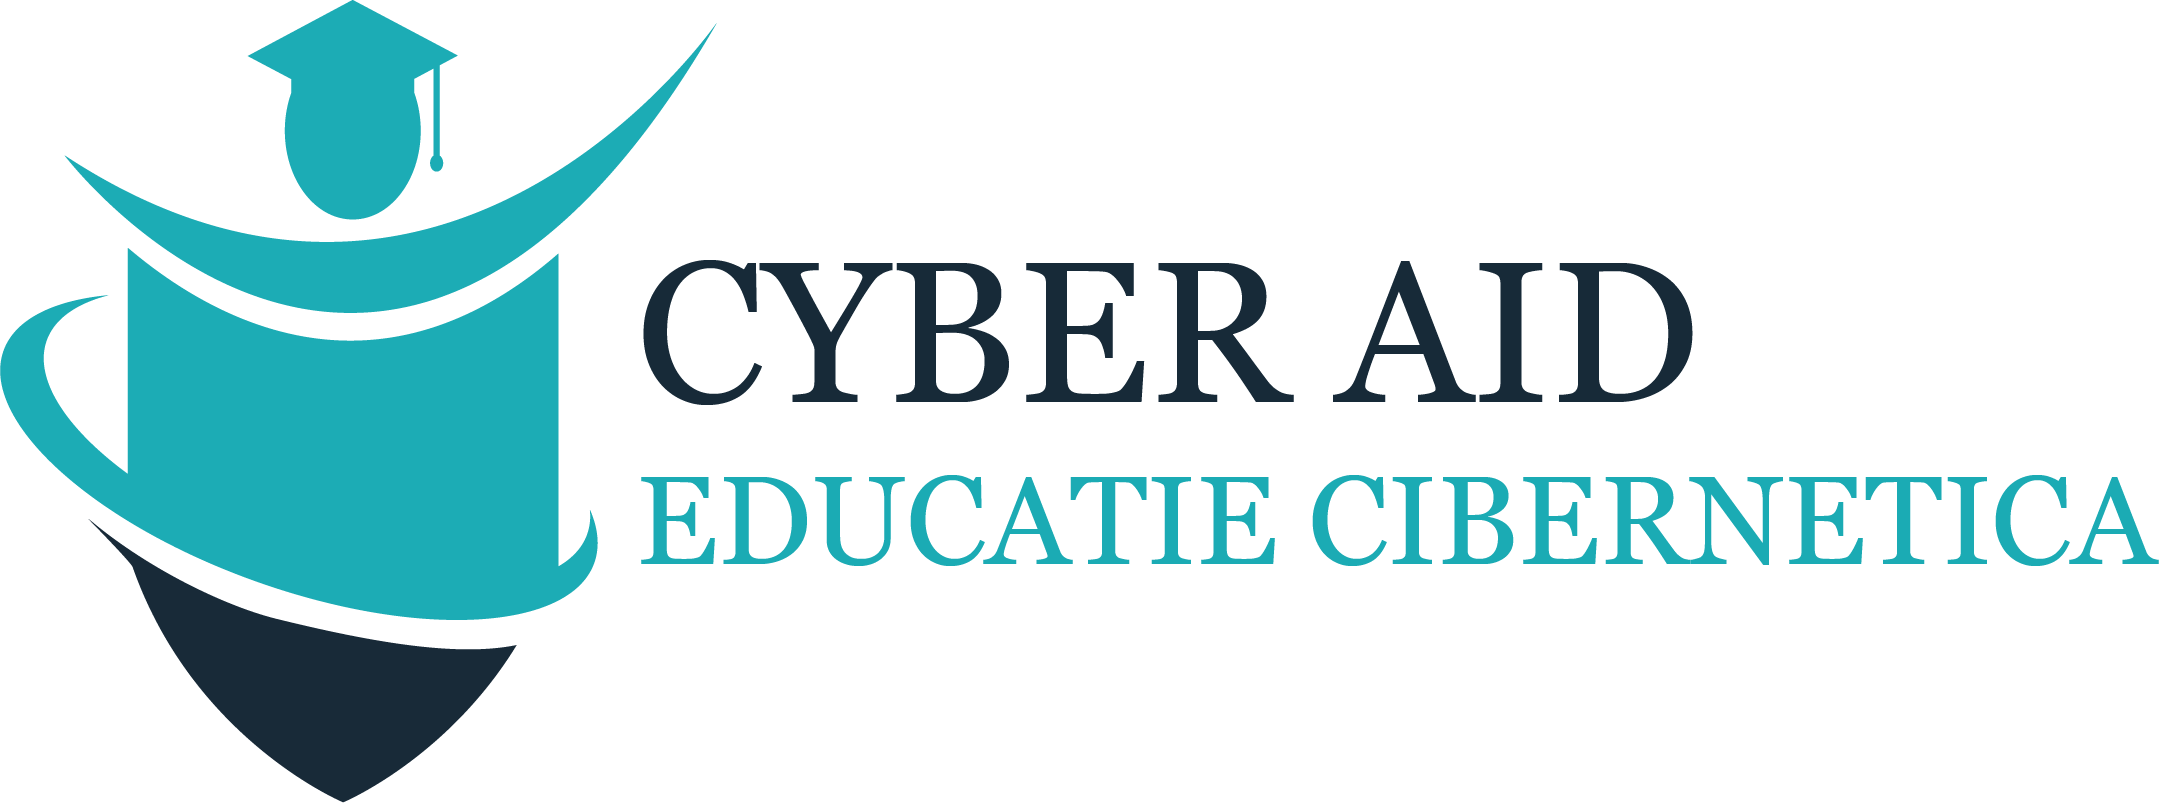 Cyber AID - Educație în securitate cibernetică